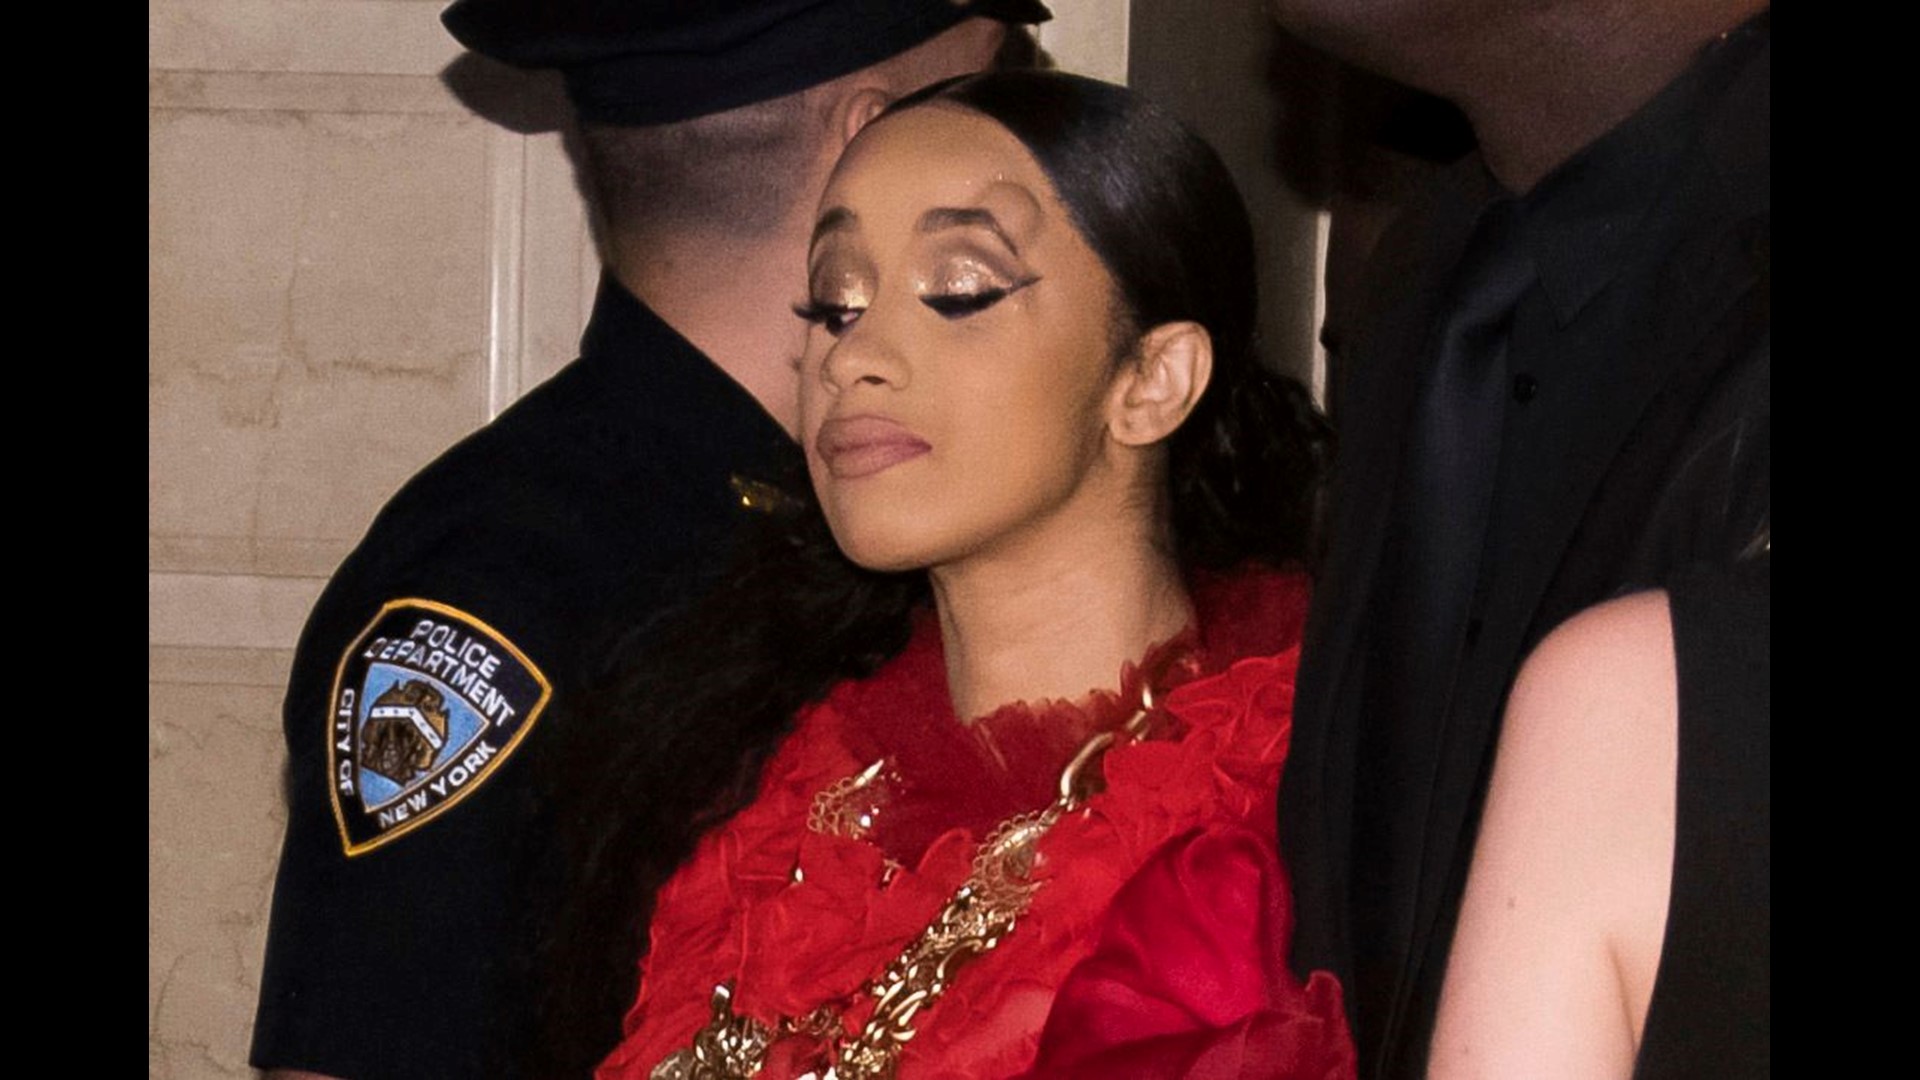 Cardi B injured after fight with Nicki Minaj at New York Fashion Week